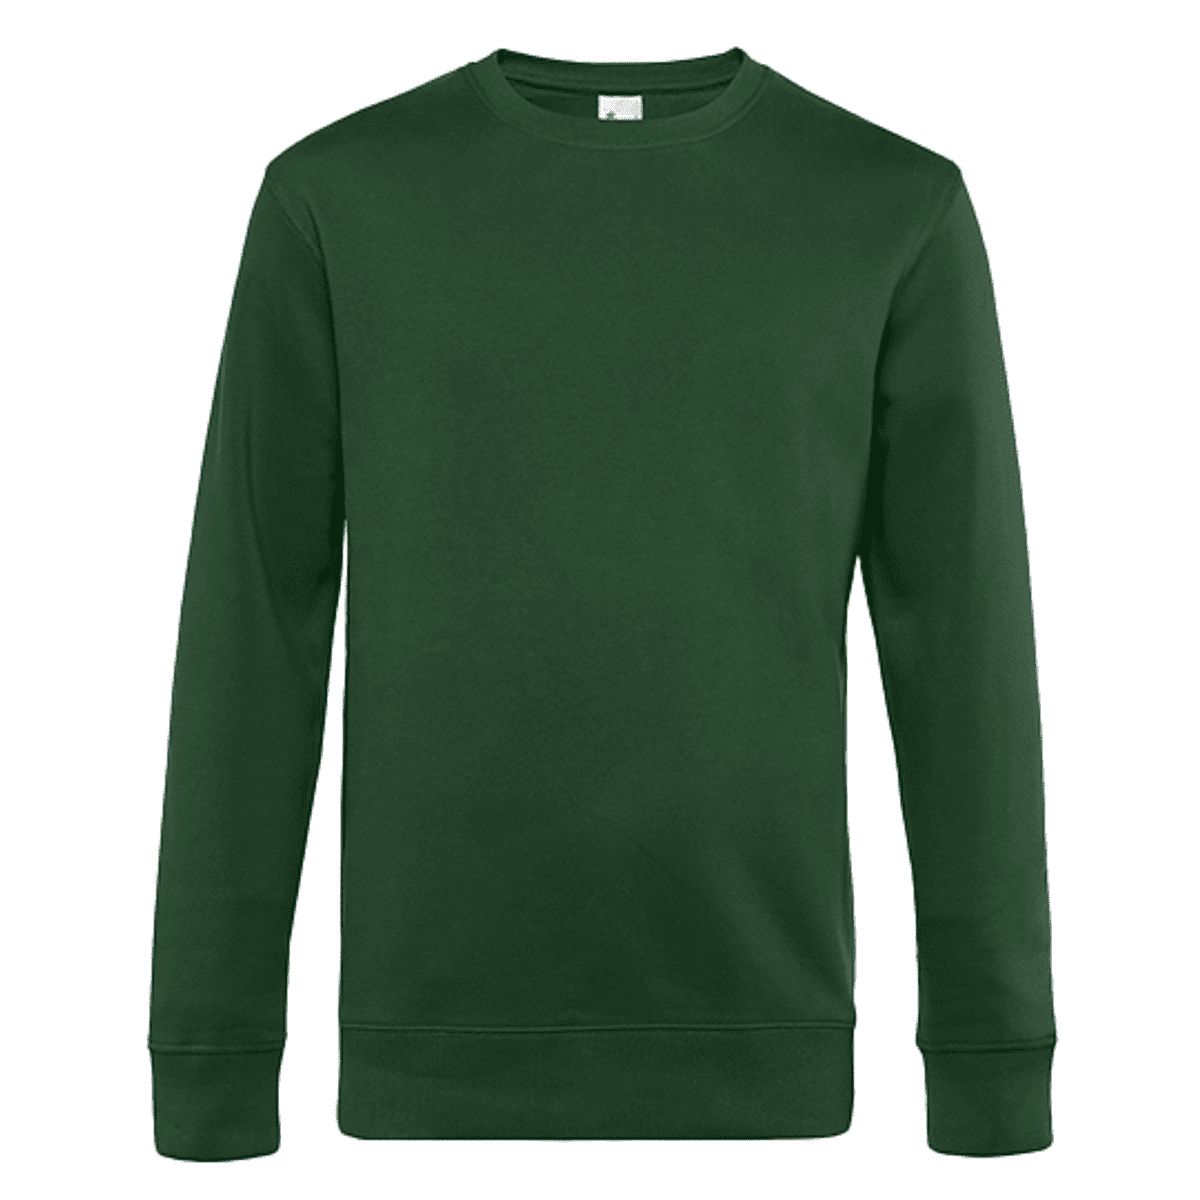 Sweatshirt Rundhals grün